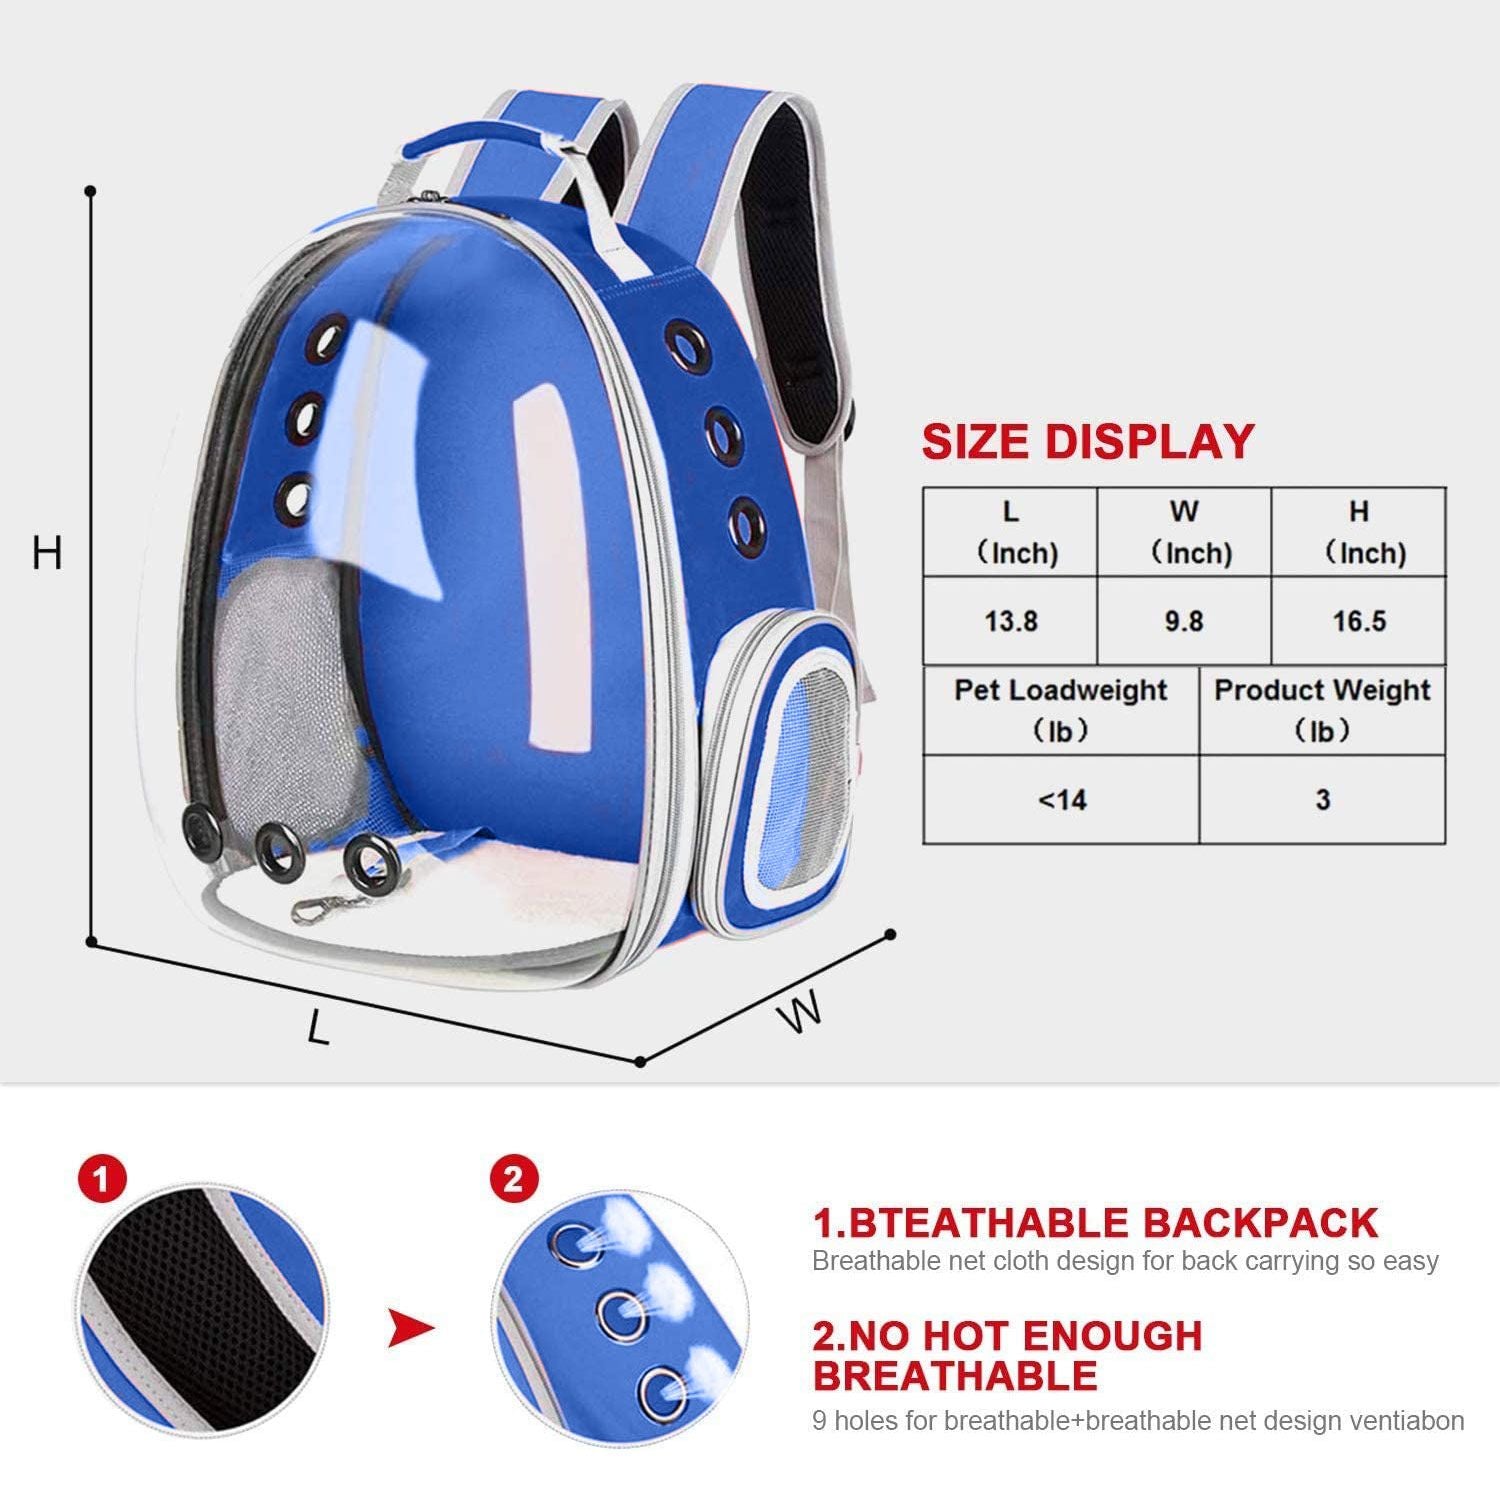 Floofi Space Capsule Backpack - Model 1 (Blue) FI-BP-106-FCQ